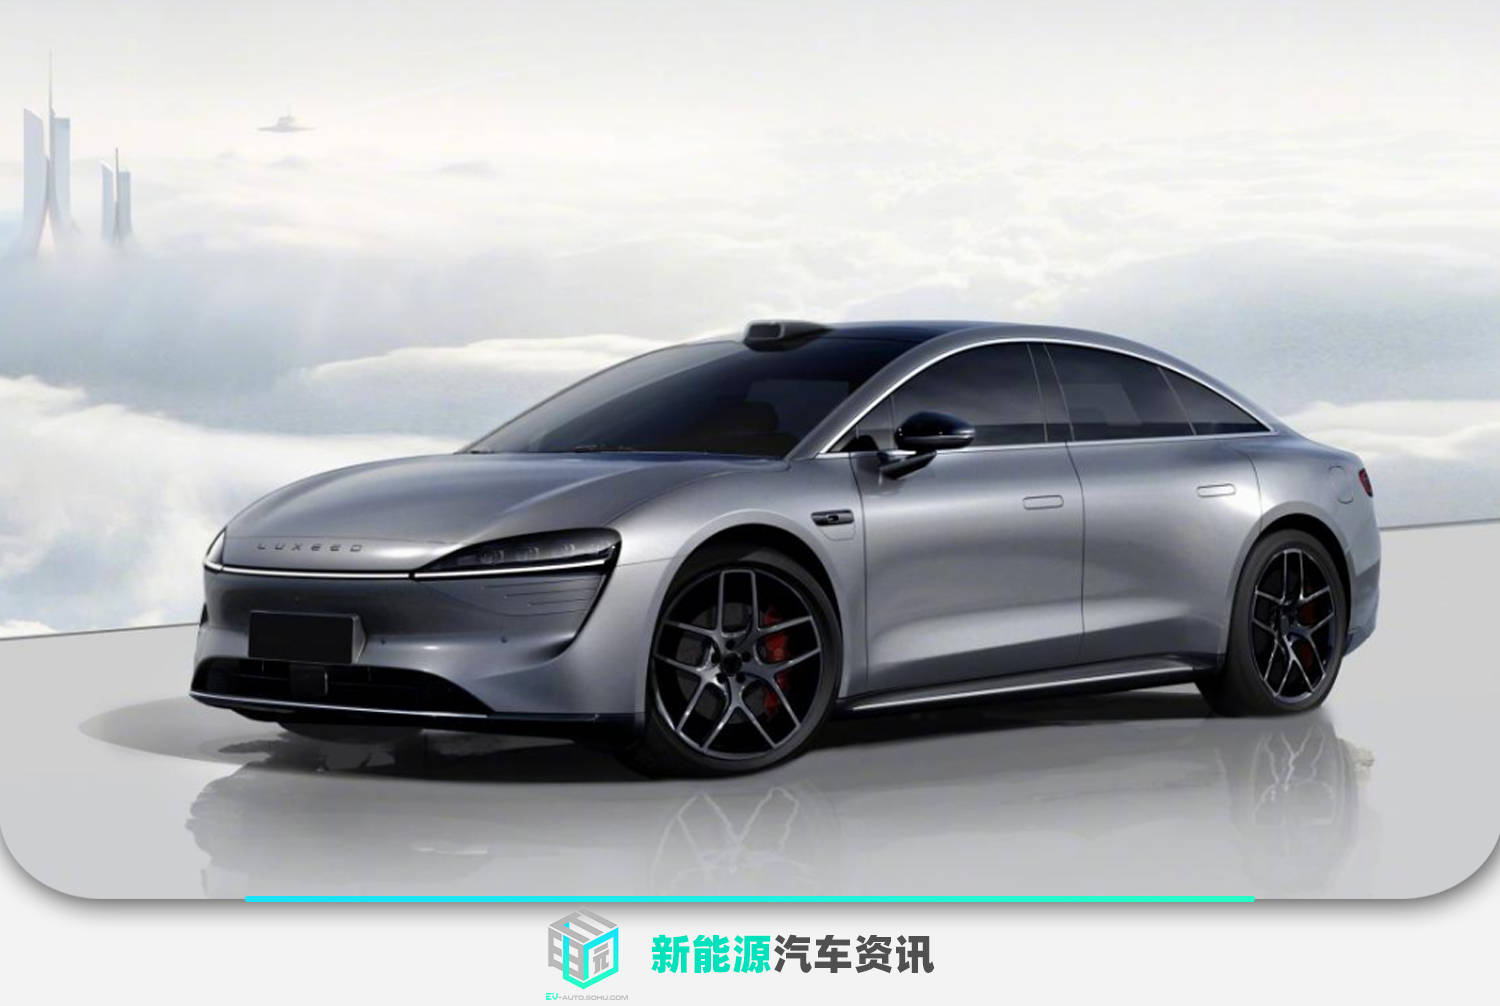 华为智选车首款纯电轿跑三季度发布 品牌名为“Luxeed”